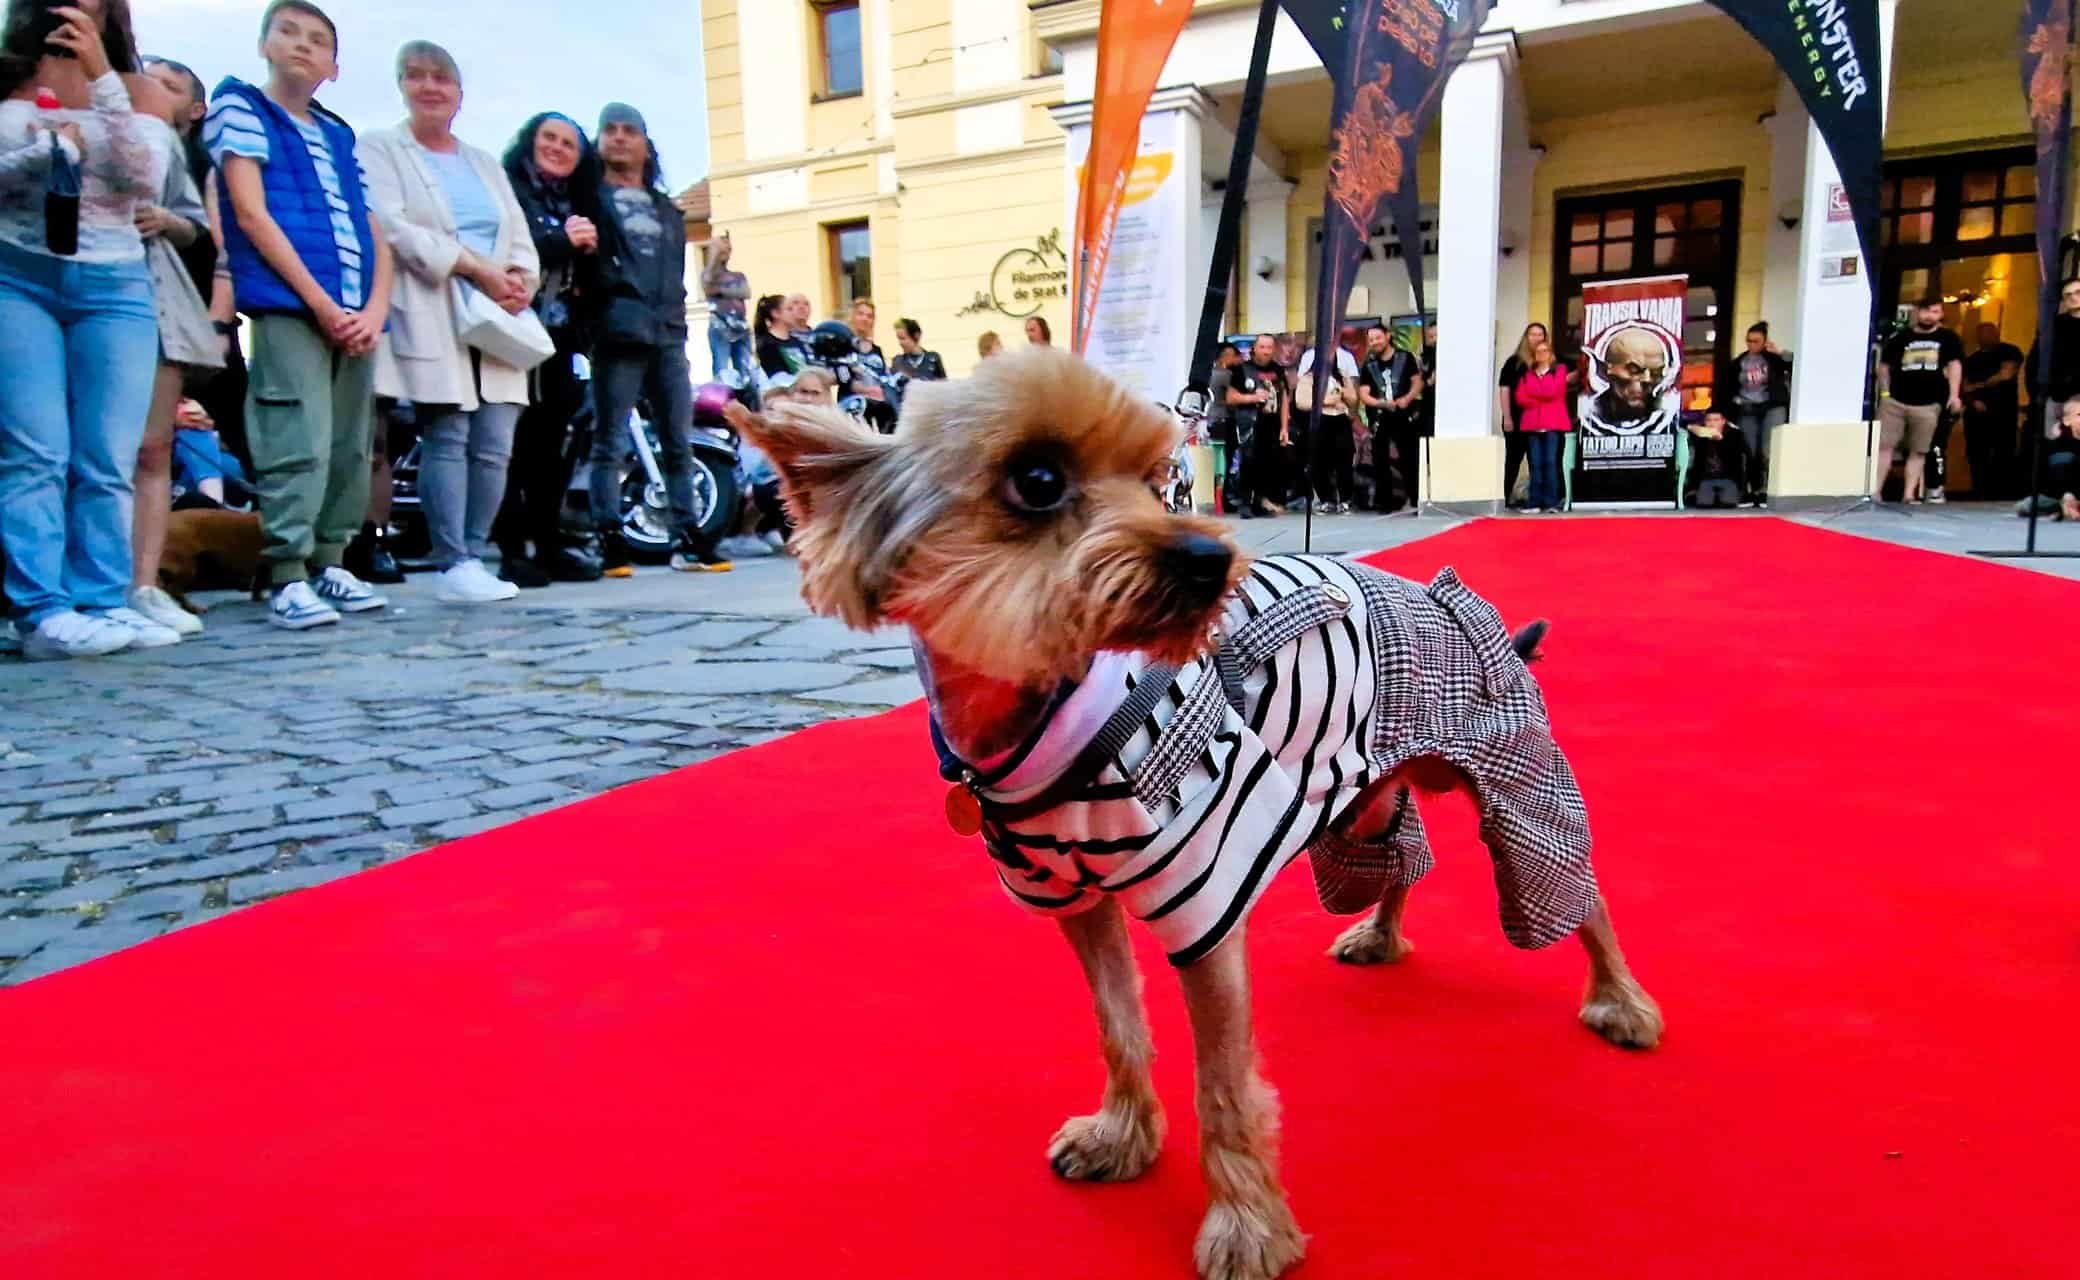 țuchi, un căţel abandonat în judeţul sibiu, a ajuns vedetă în reclame din sua și a câștigat o paradă cu 200 de câini la transilvania tattoo expo (foto)